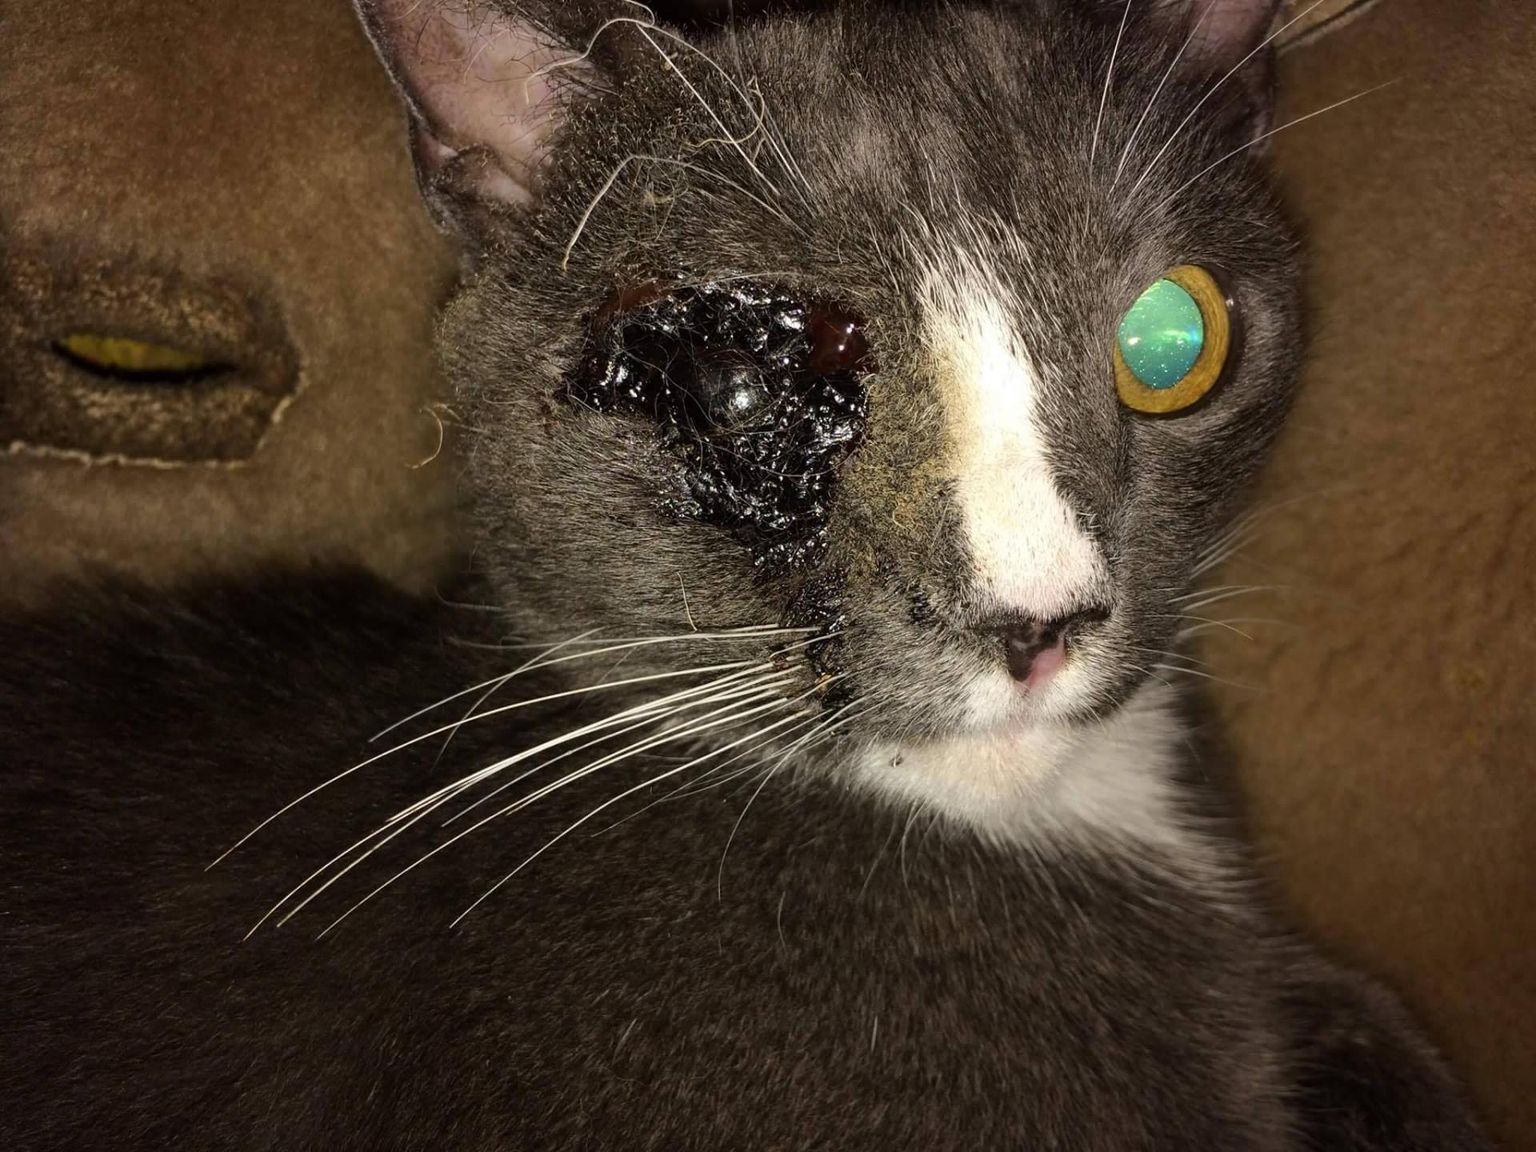 Kass Liisu oli jalutuskäigu ajal ühest silmast ilma jäänud. Tõenäoliselt on teda kuuma esemega põletatud, kuid päris kindel ei saa olla, sest olukorda keegi pealt ei näinud. FOTO: erakogu